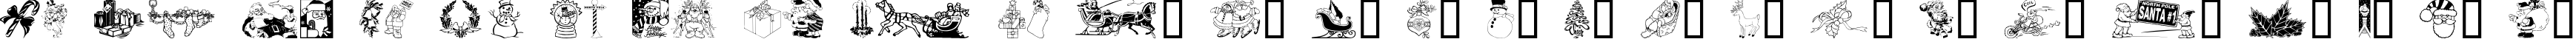 Пример написания английского алфавита шрифтом Xmas Clipart 2